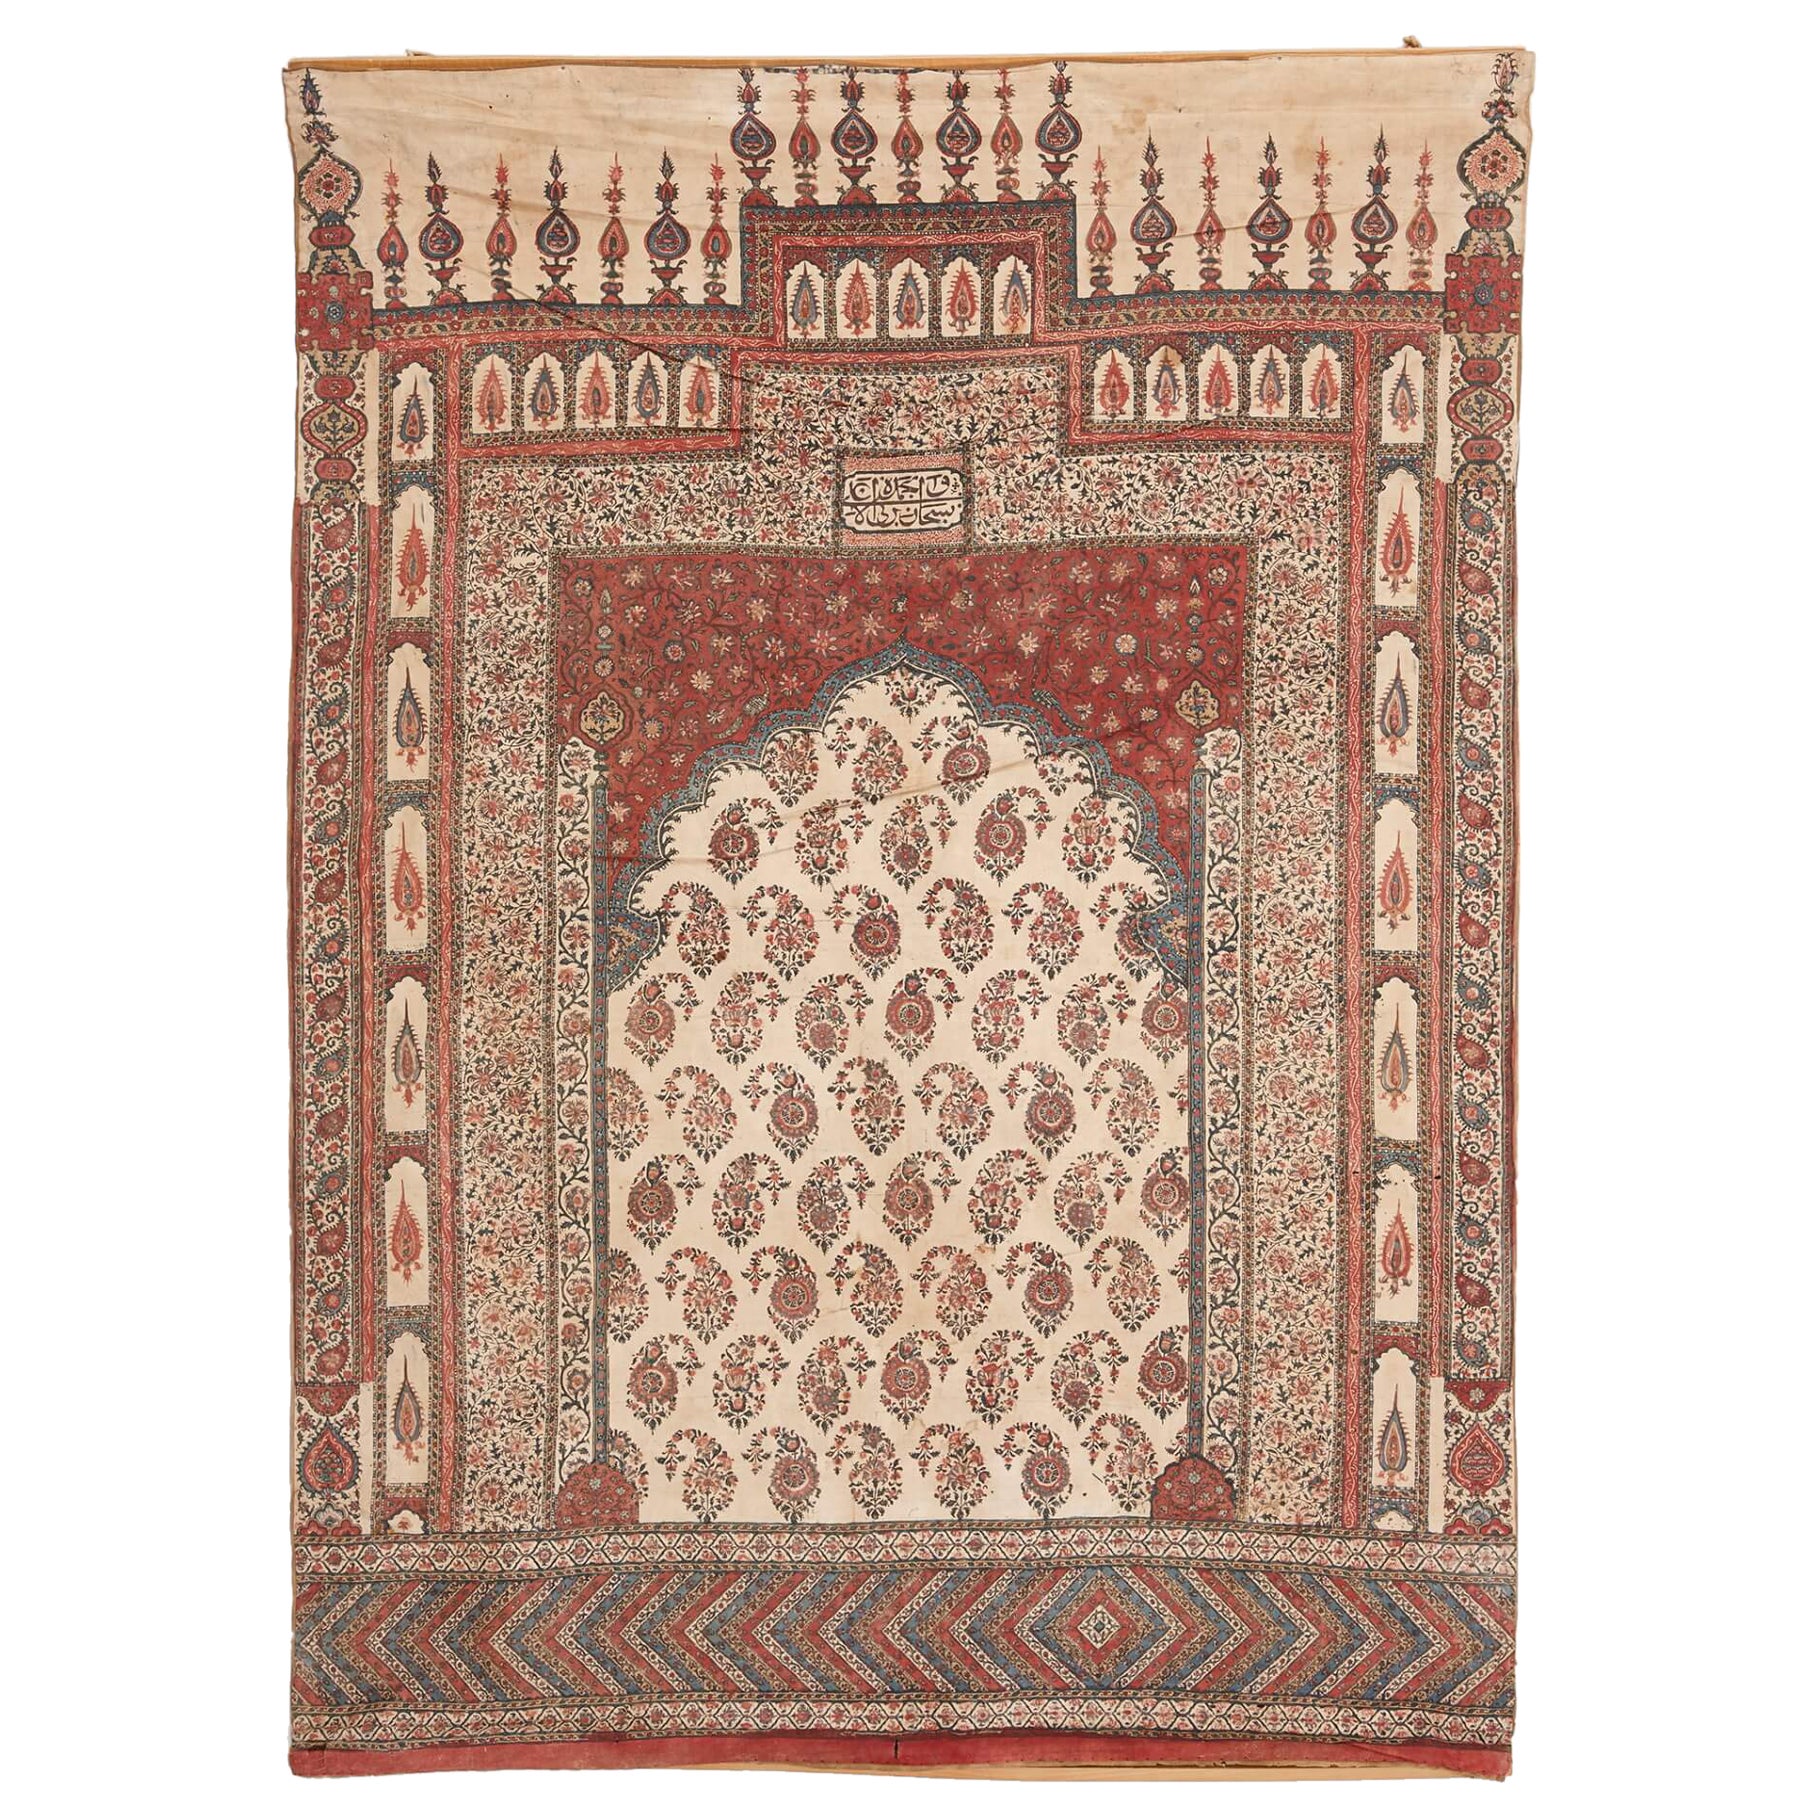 Antique Iranian Kalamkari Prayer Mat